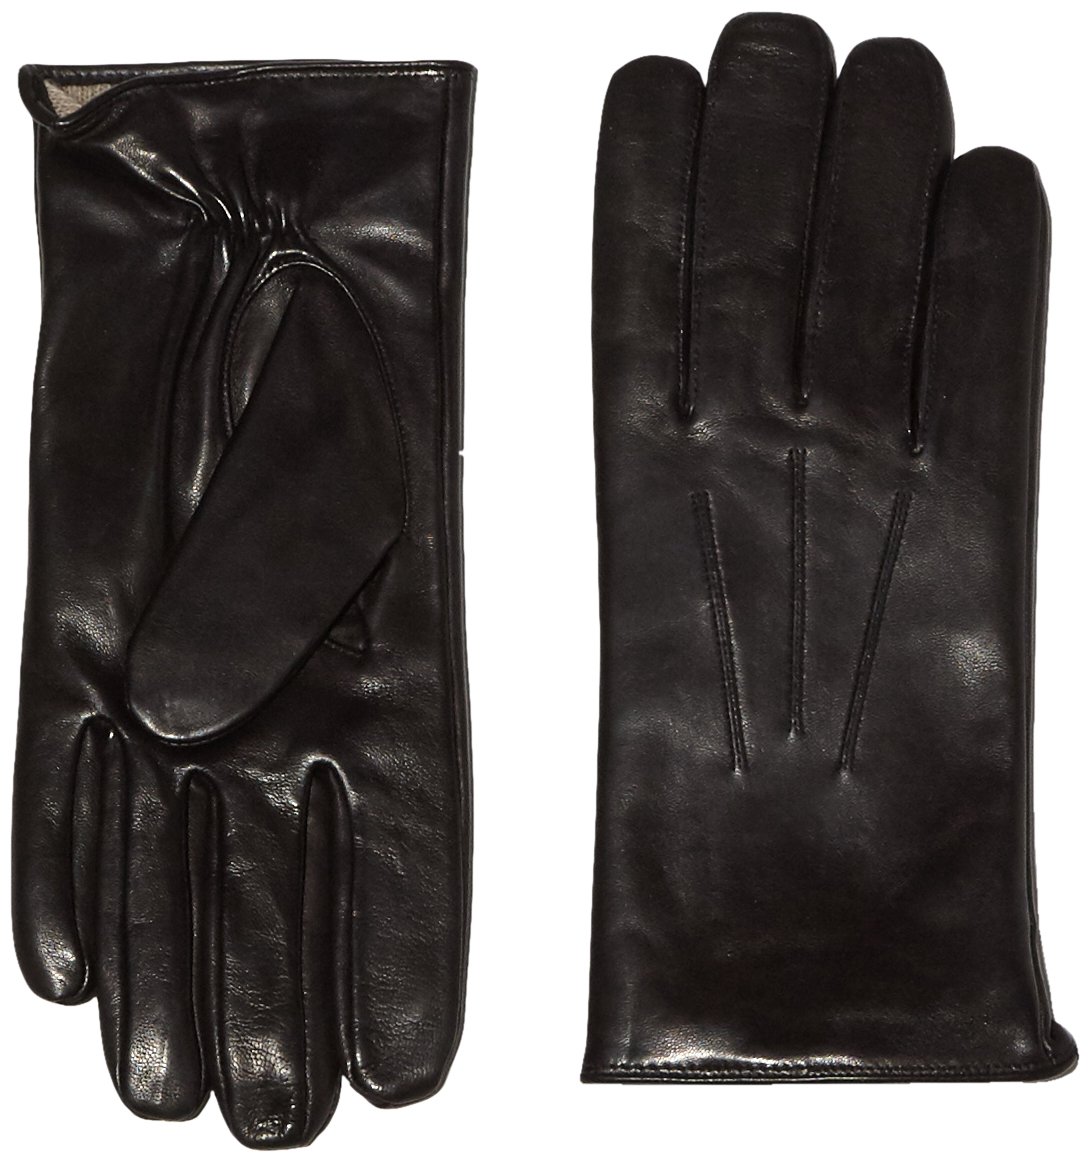 Roeckl Herren klassisk uld Handschuhe, Schwarz (Black 000), 8.5 EU